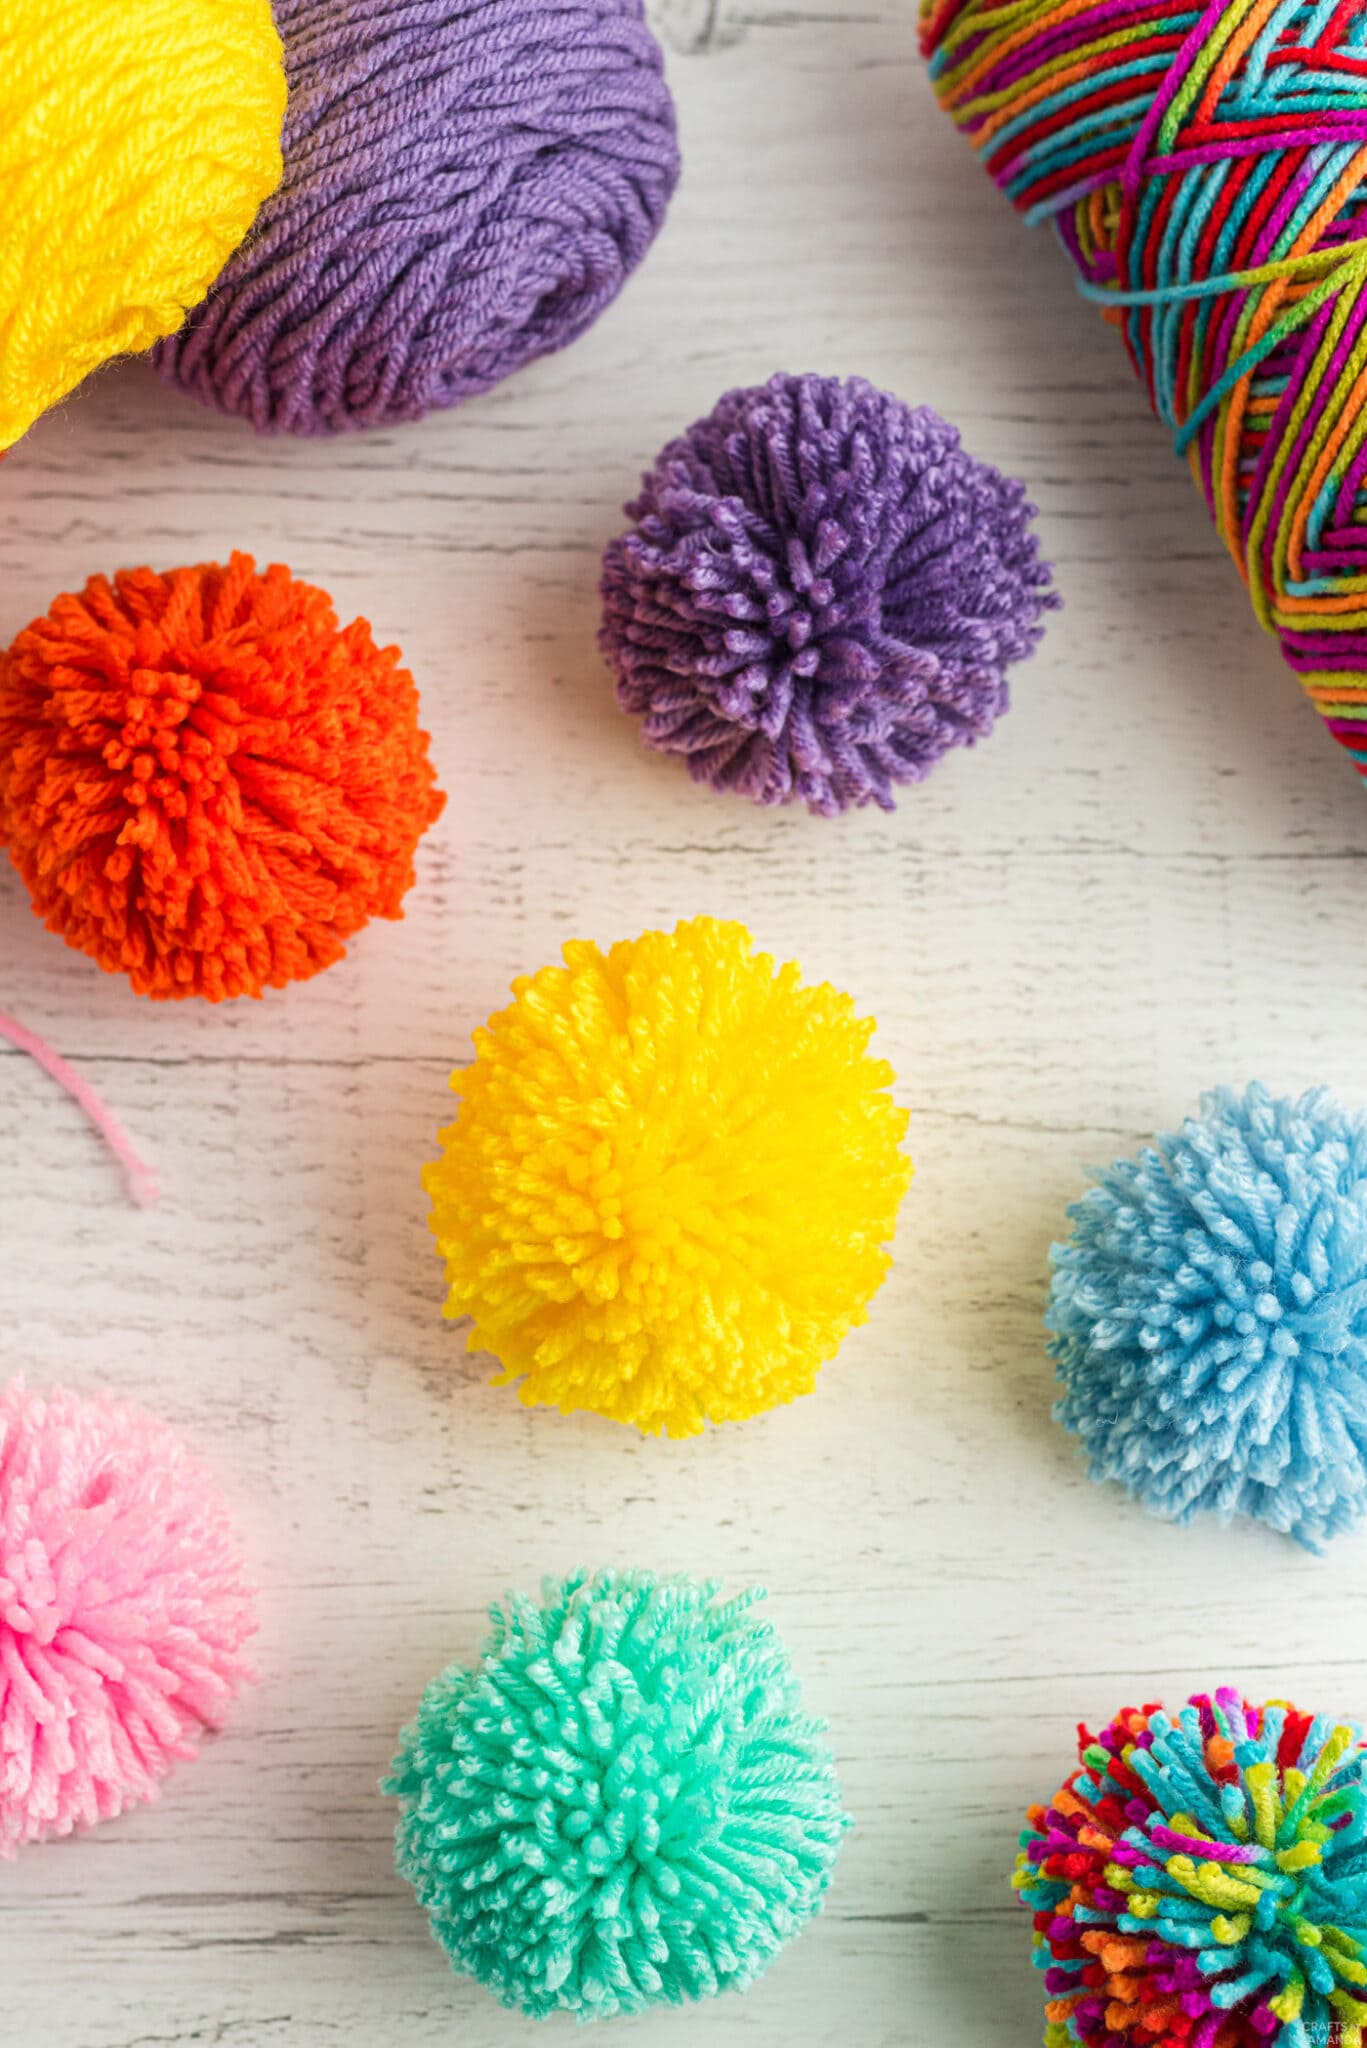 How to Make a Pom Pom - Crafts by Amanda - Crafts for Seniors